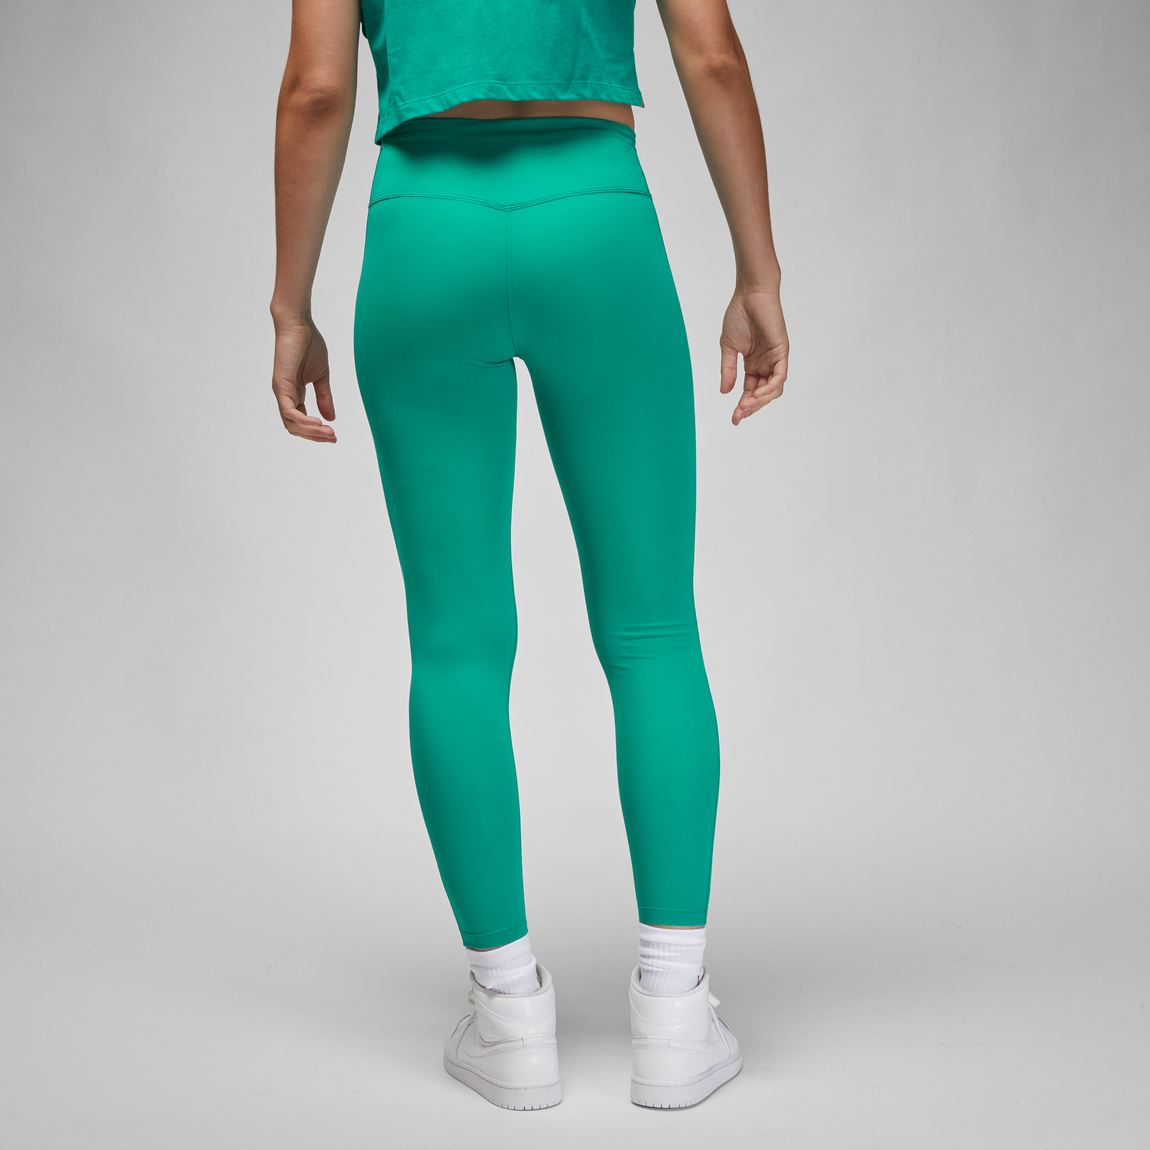 Jordan Women's Sport Leggings (New Emerald/Key Lime) - Jordan Women's Sport Leggings (New Emerald/Key Lime) - 